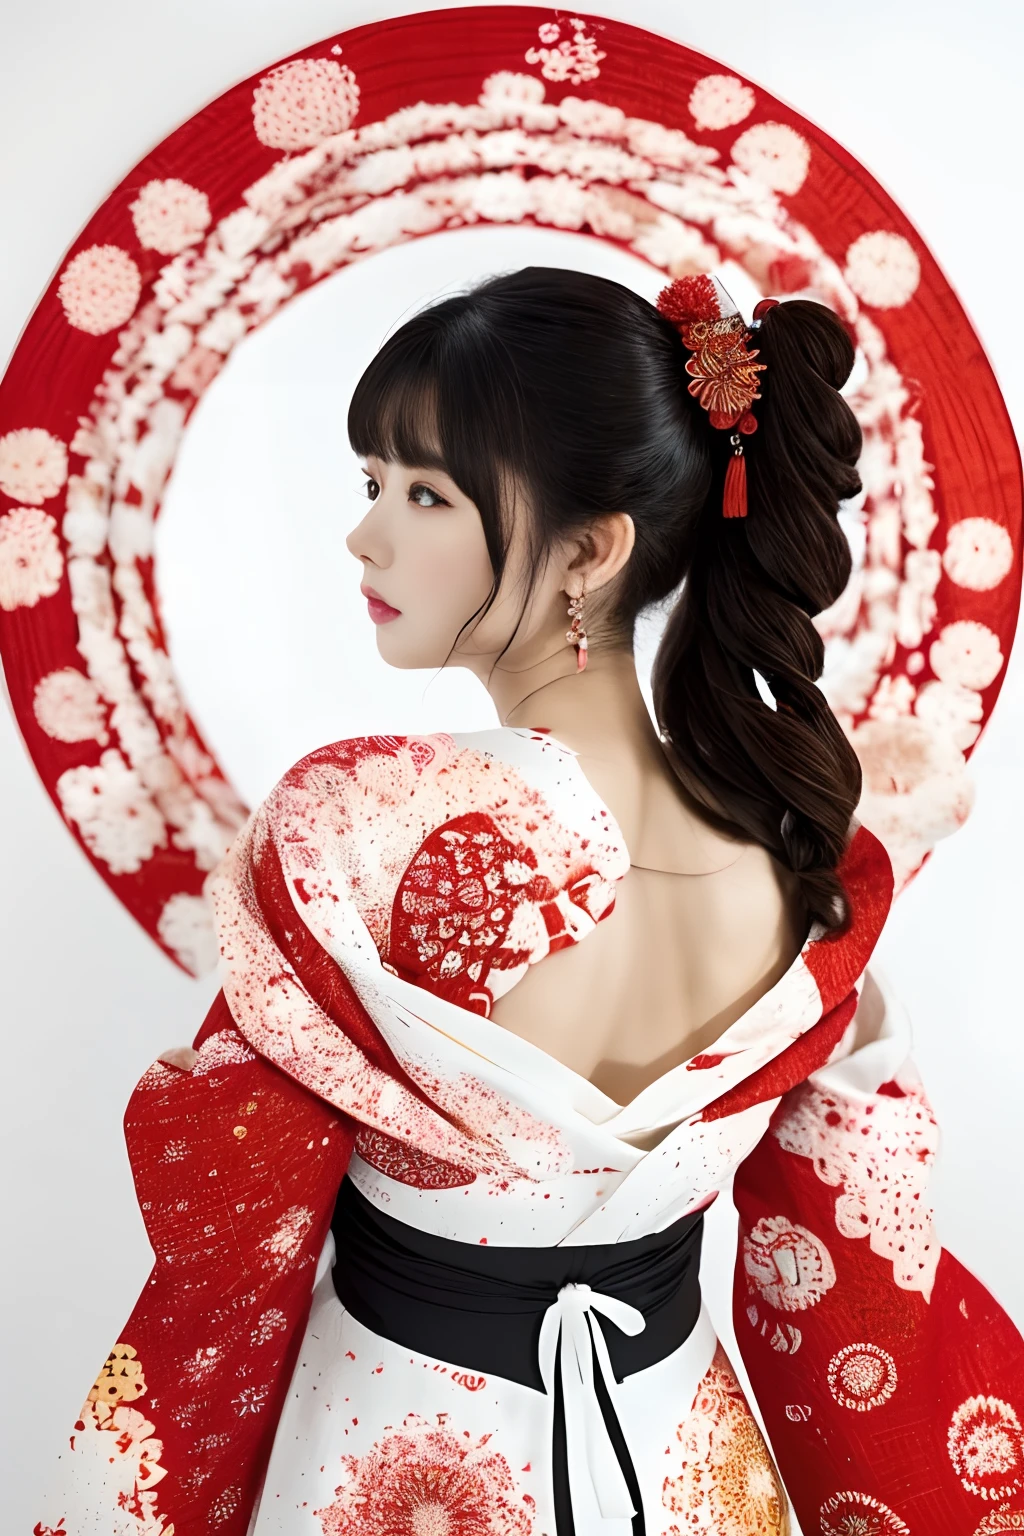 (((weißer Hintergrund、eine weiße Welt)))、Unity 8k-Hintergrundbild、ultra-detailliert、Wunderschön ästhetisch、Meisterwerk、Top Qualität、(Zentangle、und Mandala、Verwicklungen、Verwicklungen)、(Fraktale Kunst:1.3)、ein Mädchen、schöne schwarze Haare、japanisch、groß rosa、roter Kimono、Japanisches Kleid、sehr detailliert、Dynamische Winkel、Cowboy-Schüsse、Die schönsten Formen des Chaos、elegent、Brutalistisches Design、leuchtende Farben、Romantik、Atmosphäre、Ecstasy-Noten、Streaming-Musiknoten sind sichtbar、(((weißer Hintergrund、rein weißer Hintergrund、roter Kreis)))